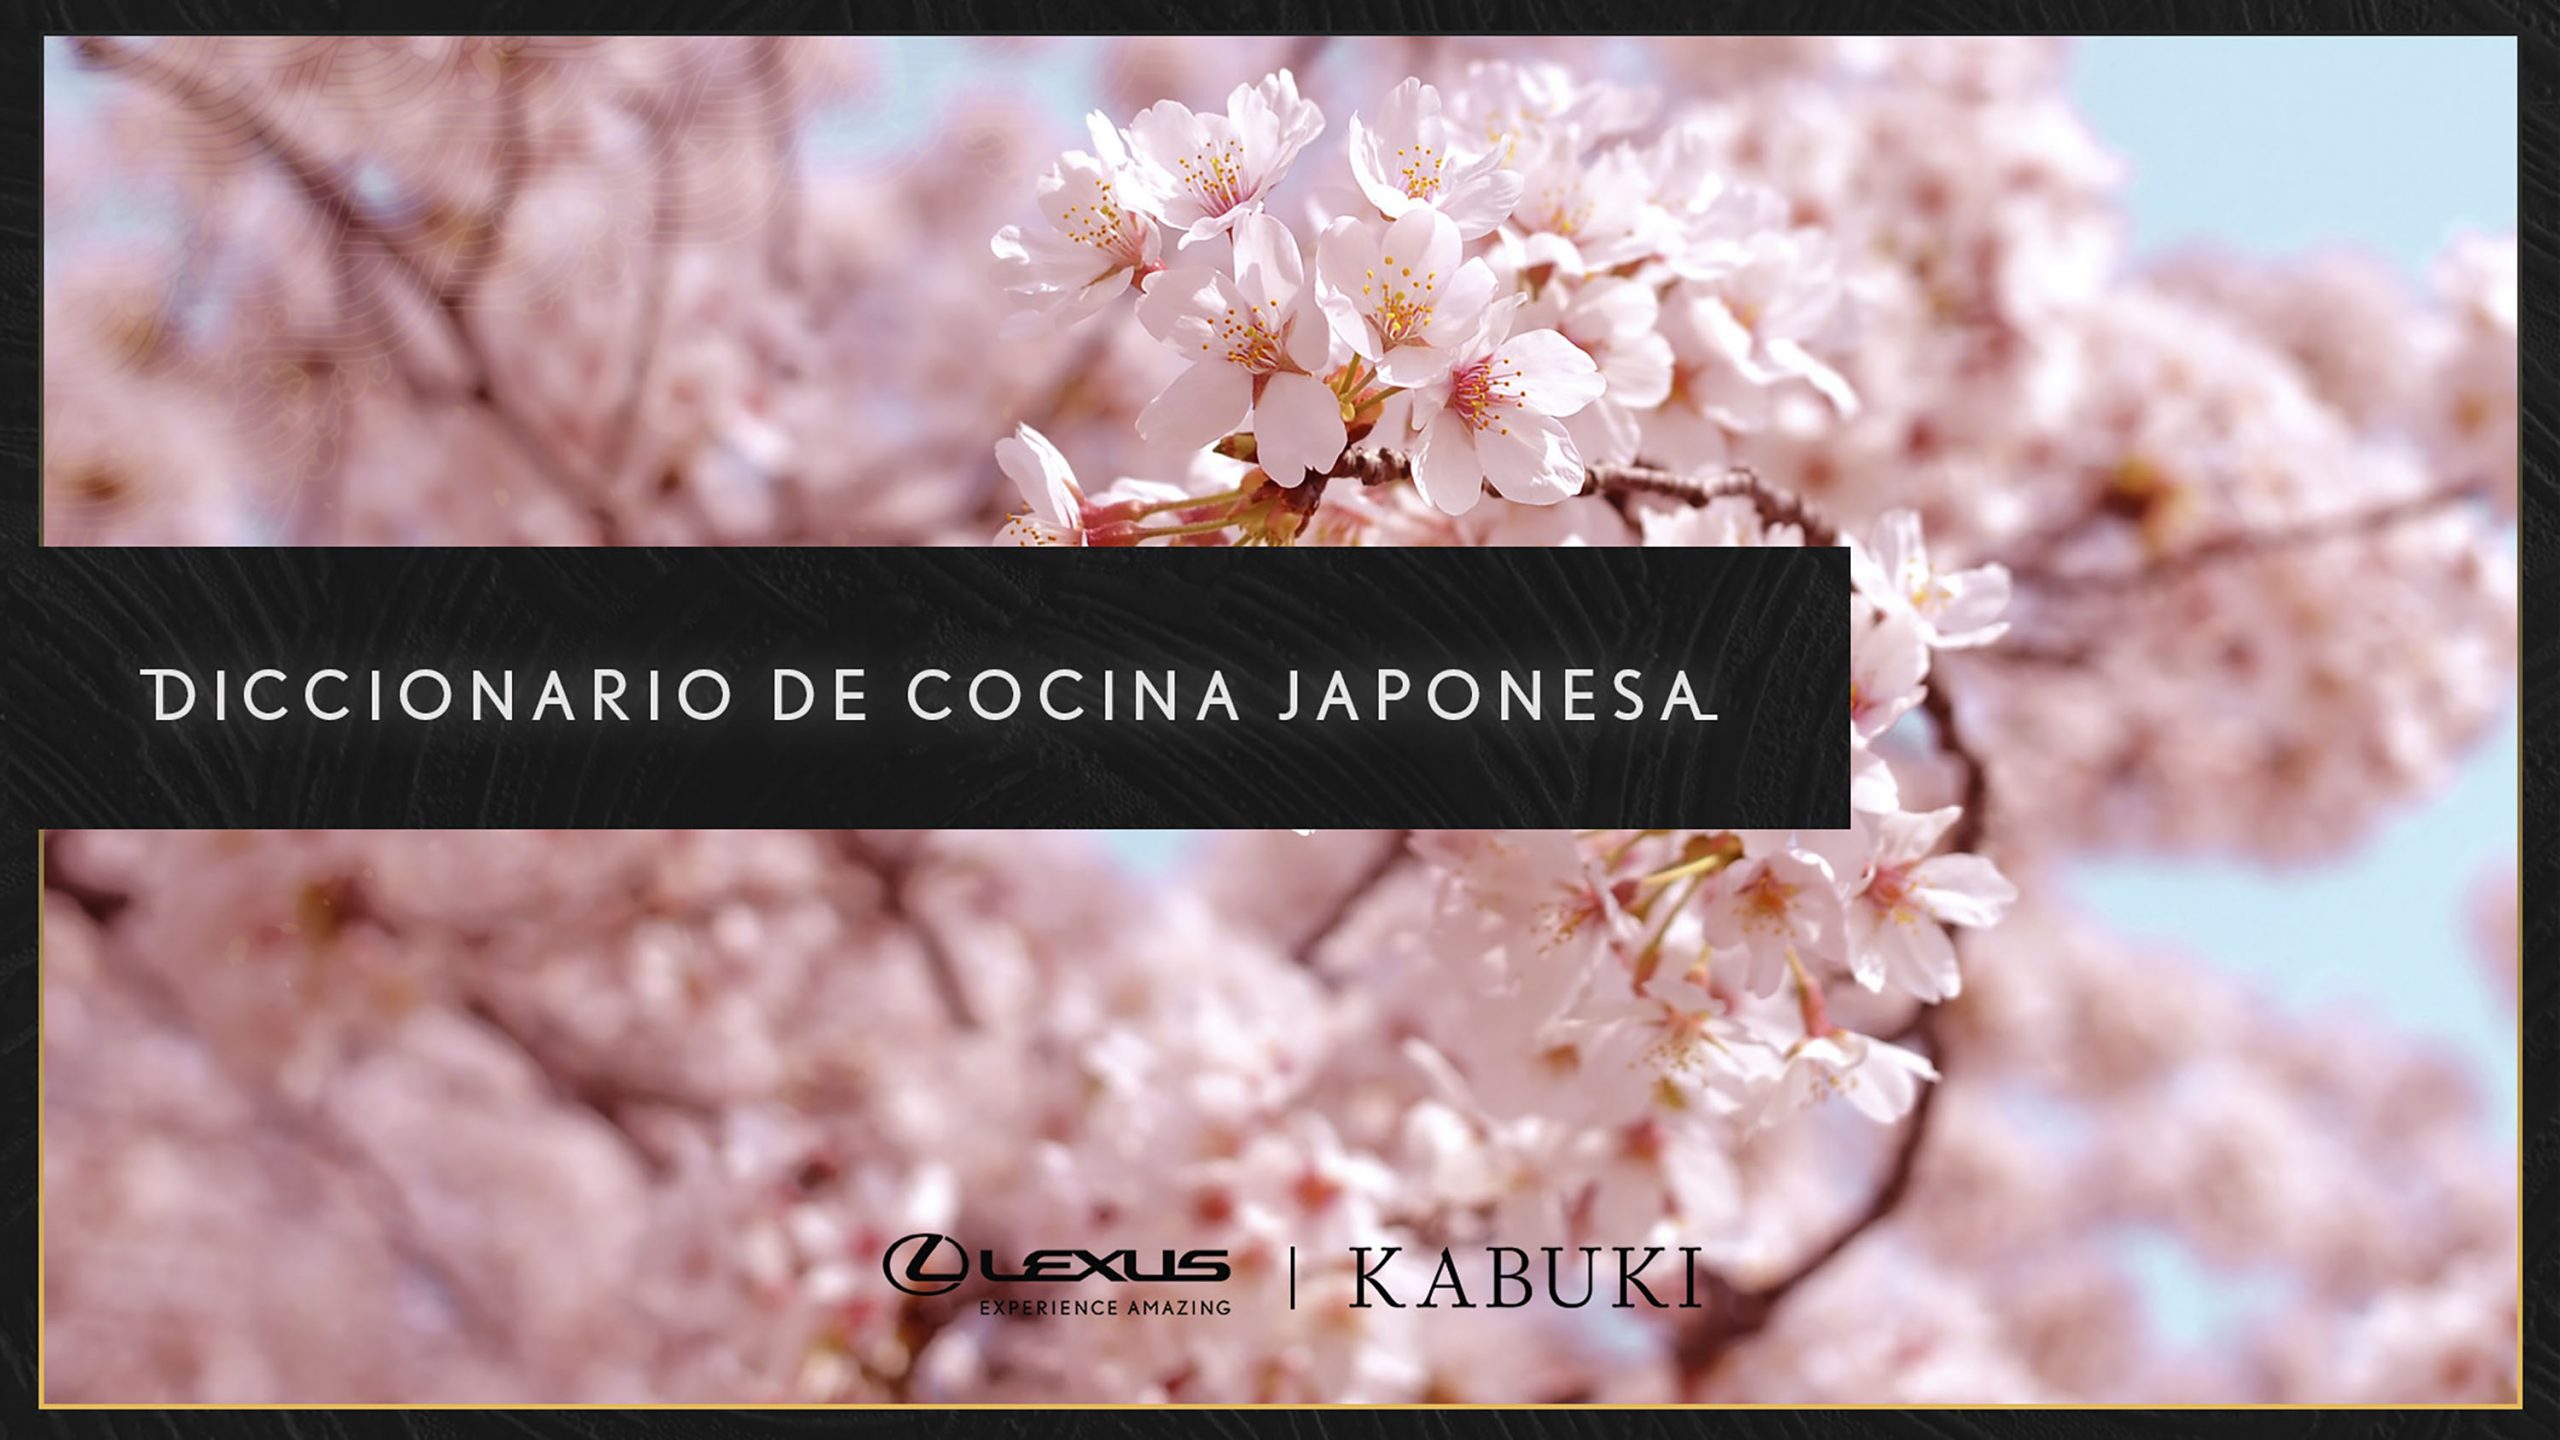 Lexus y Kabuki Crean el “Diccionario de Cocina Japonesa”